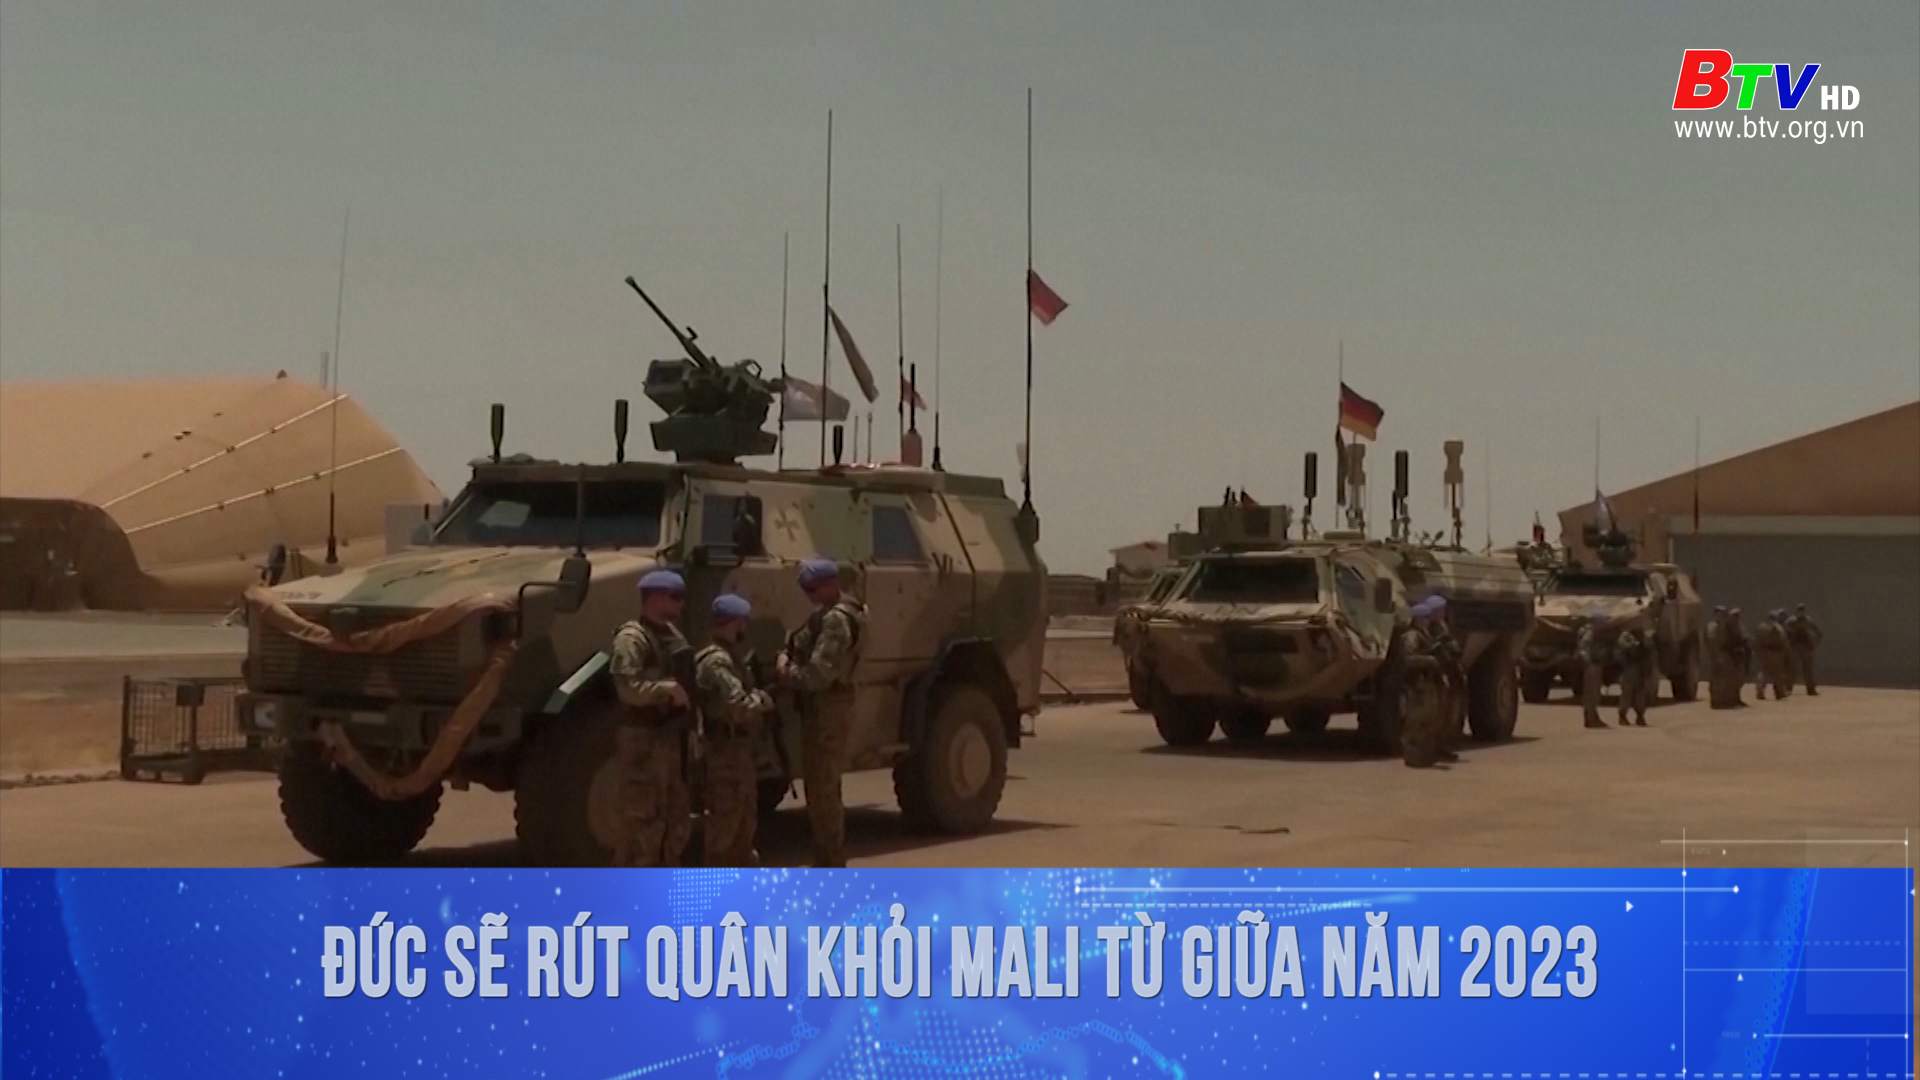 Đức sẽ rút quân khỏi Mali từ giữa năm 2023